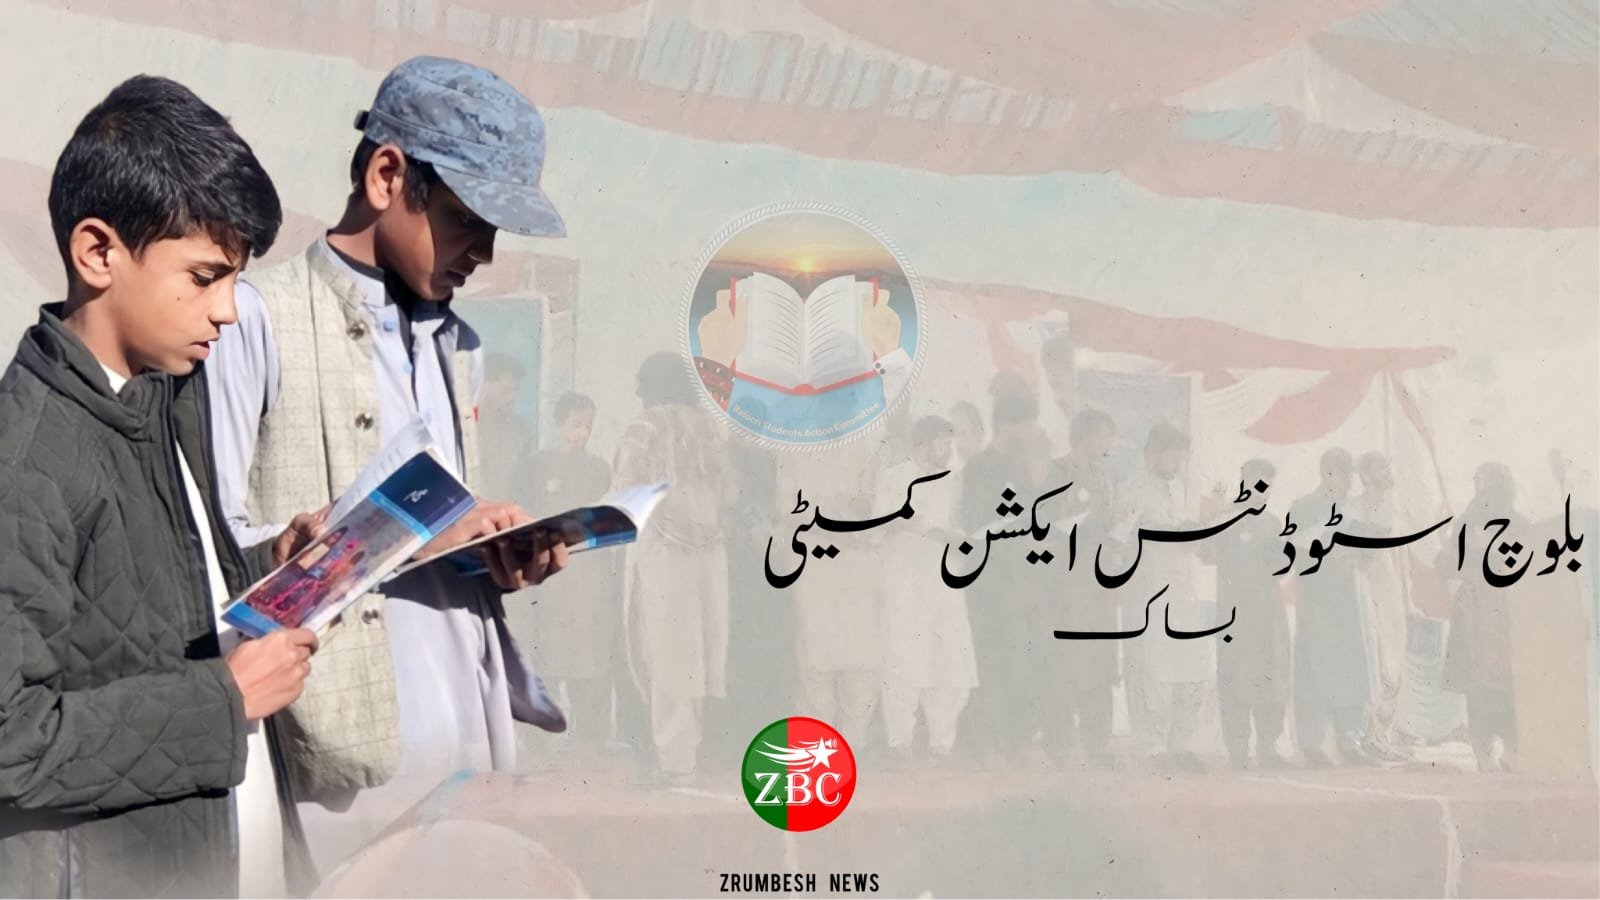 نئے سال کا آغاز بلوچستان کتاب کاروان کے نام سے منسوب کرتے ہوئے بلوچستان بھر میں کتاب میلے لگائے جائیں گے۔بساک | ریڈیو زرمبش اردو 